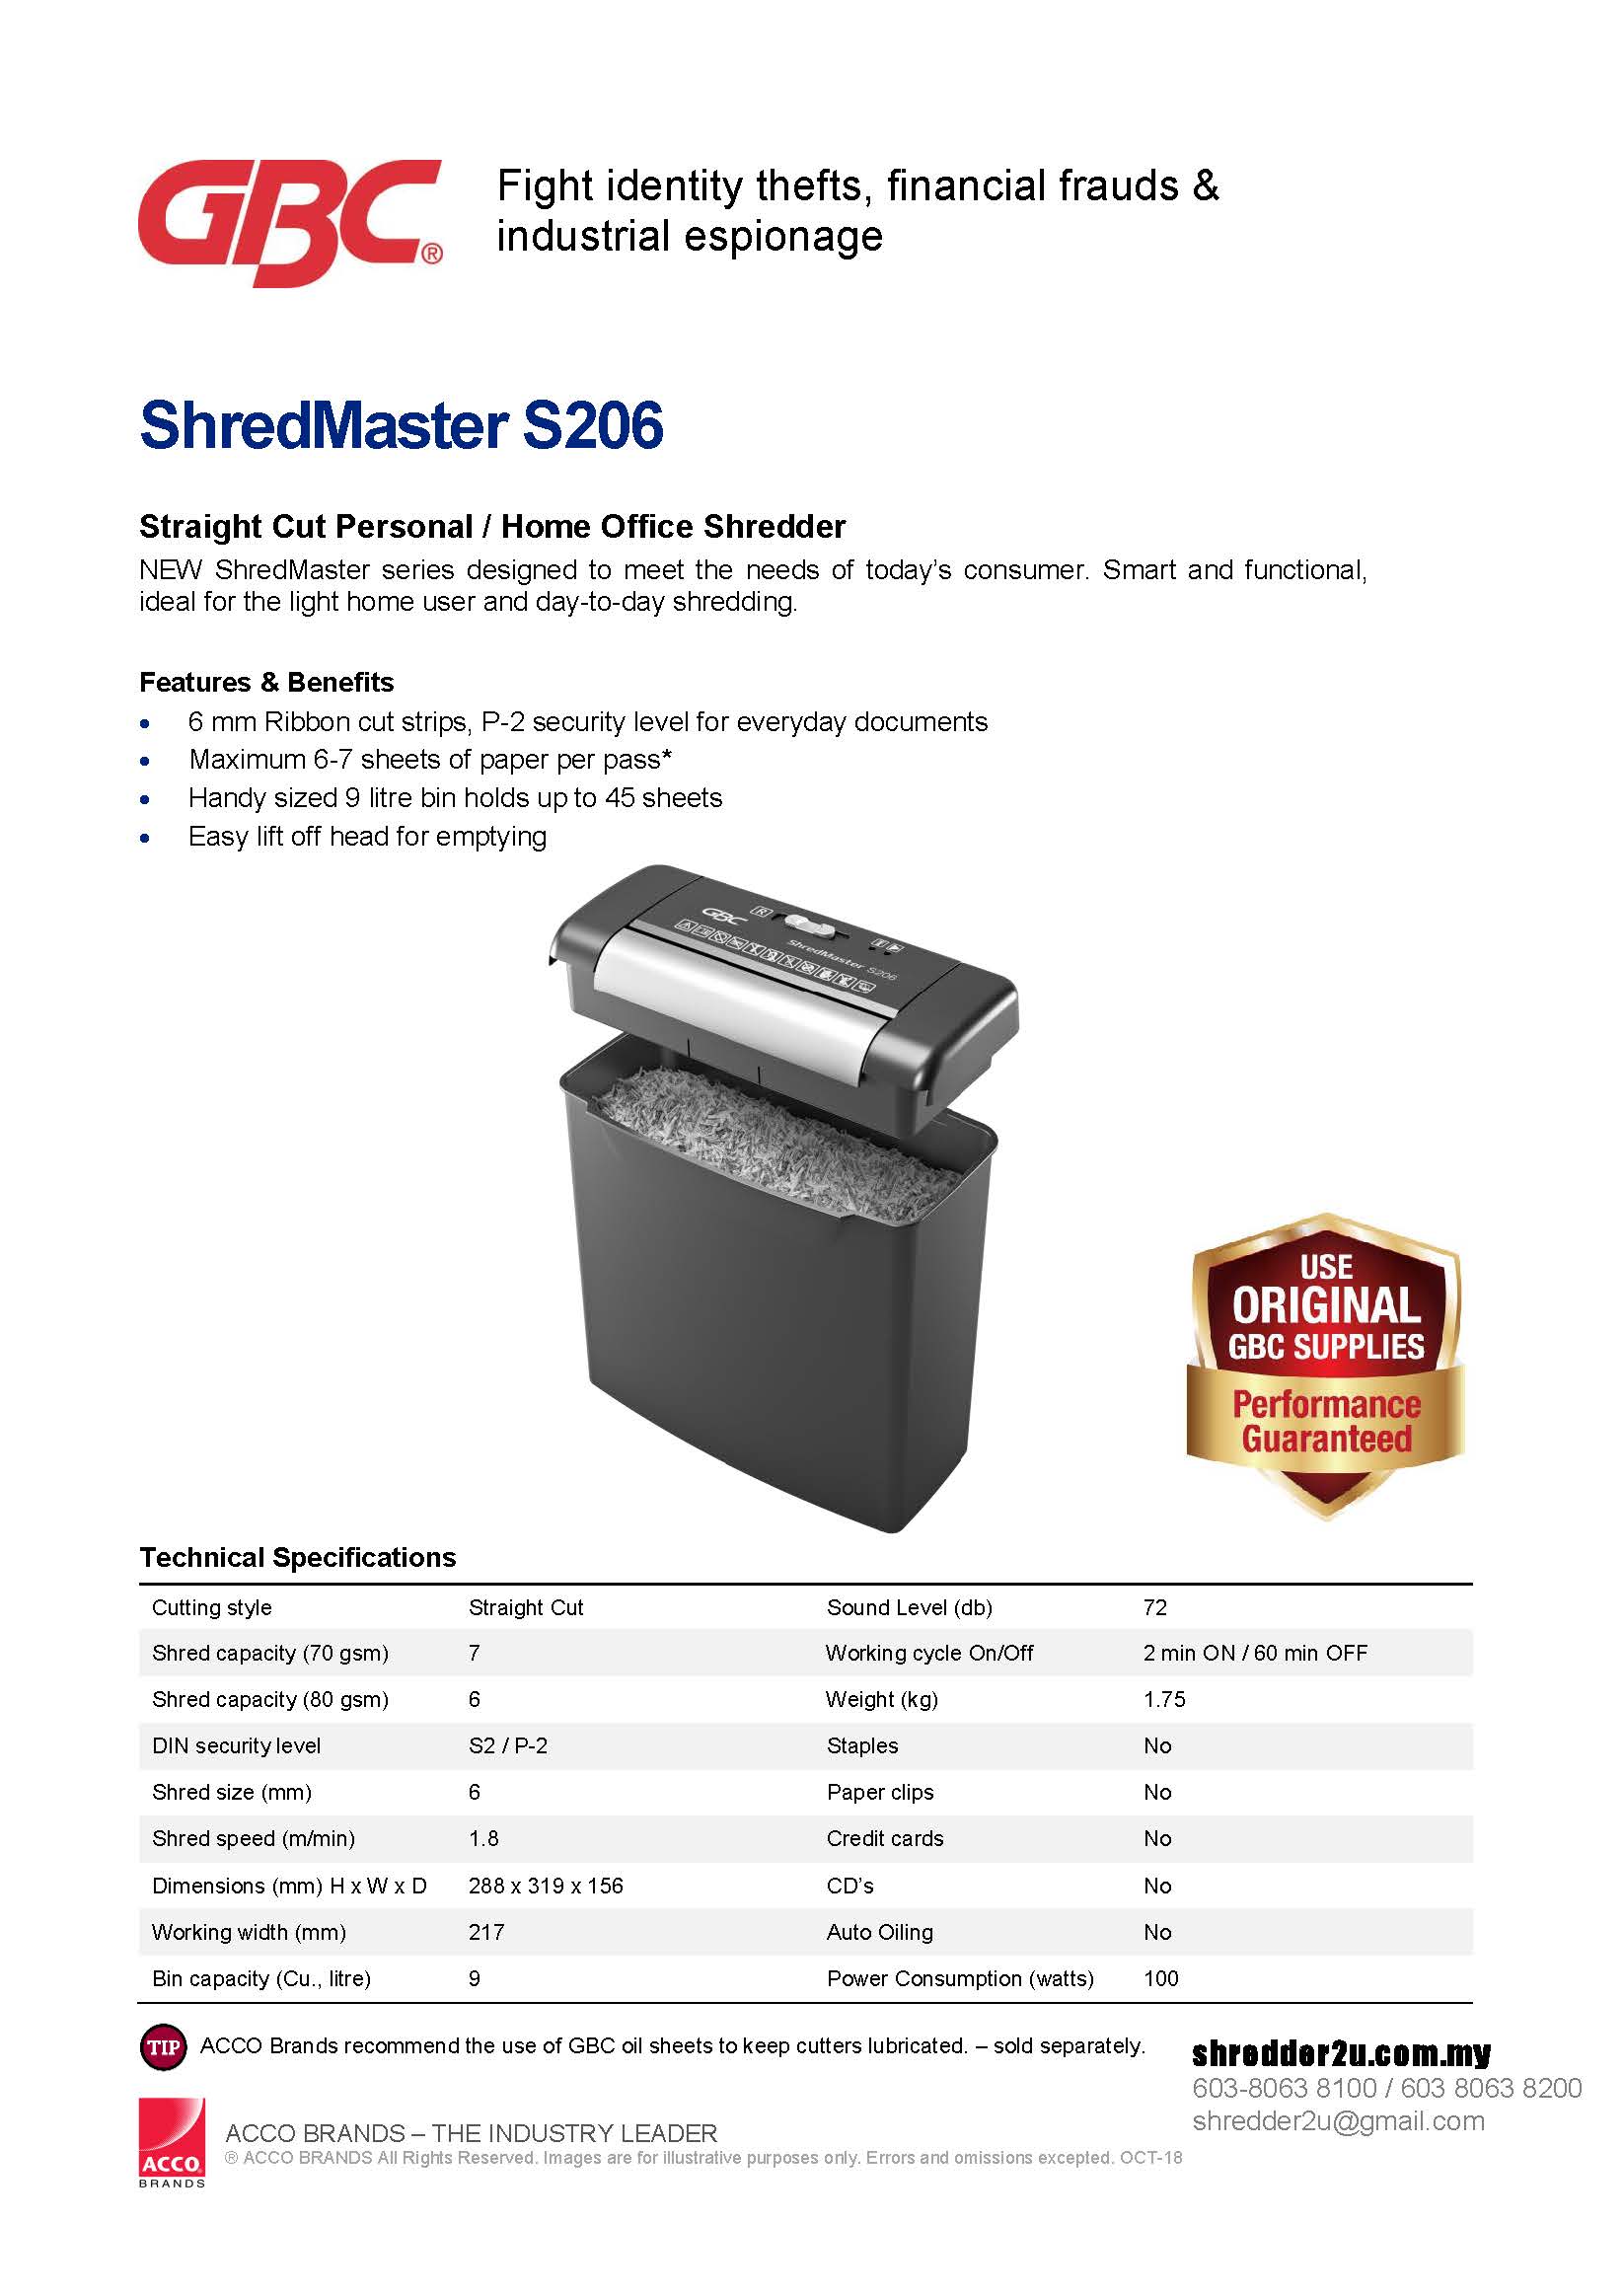 GBC ShredMaster S206 Specification